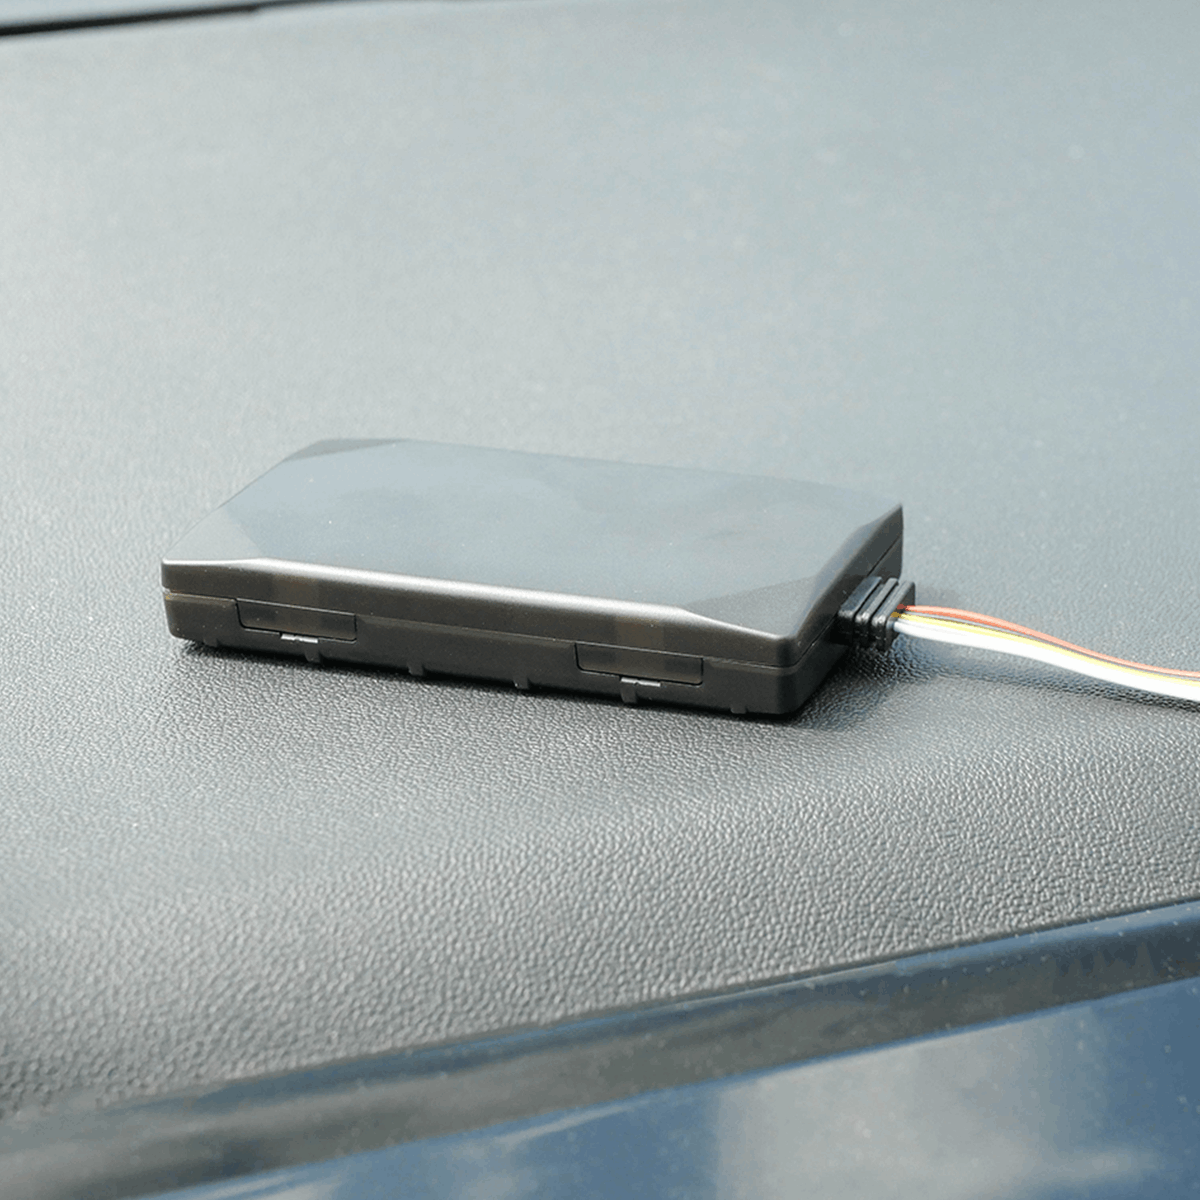 Teltonika Wired GPS Tracker inside a car